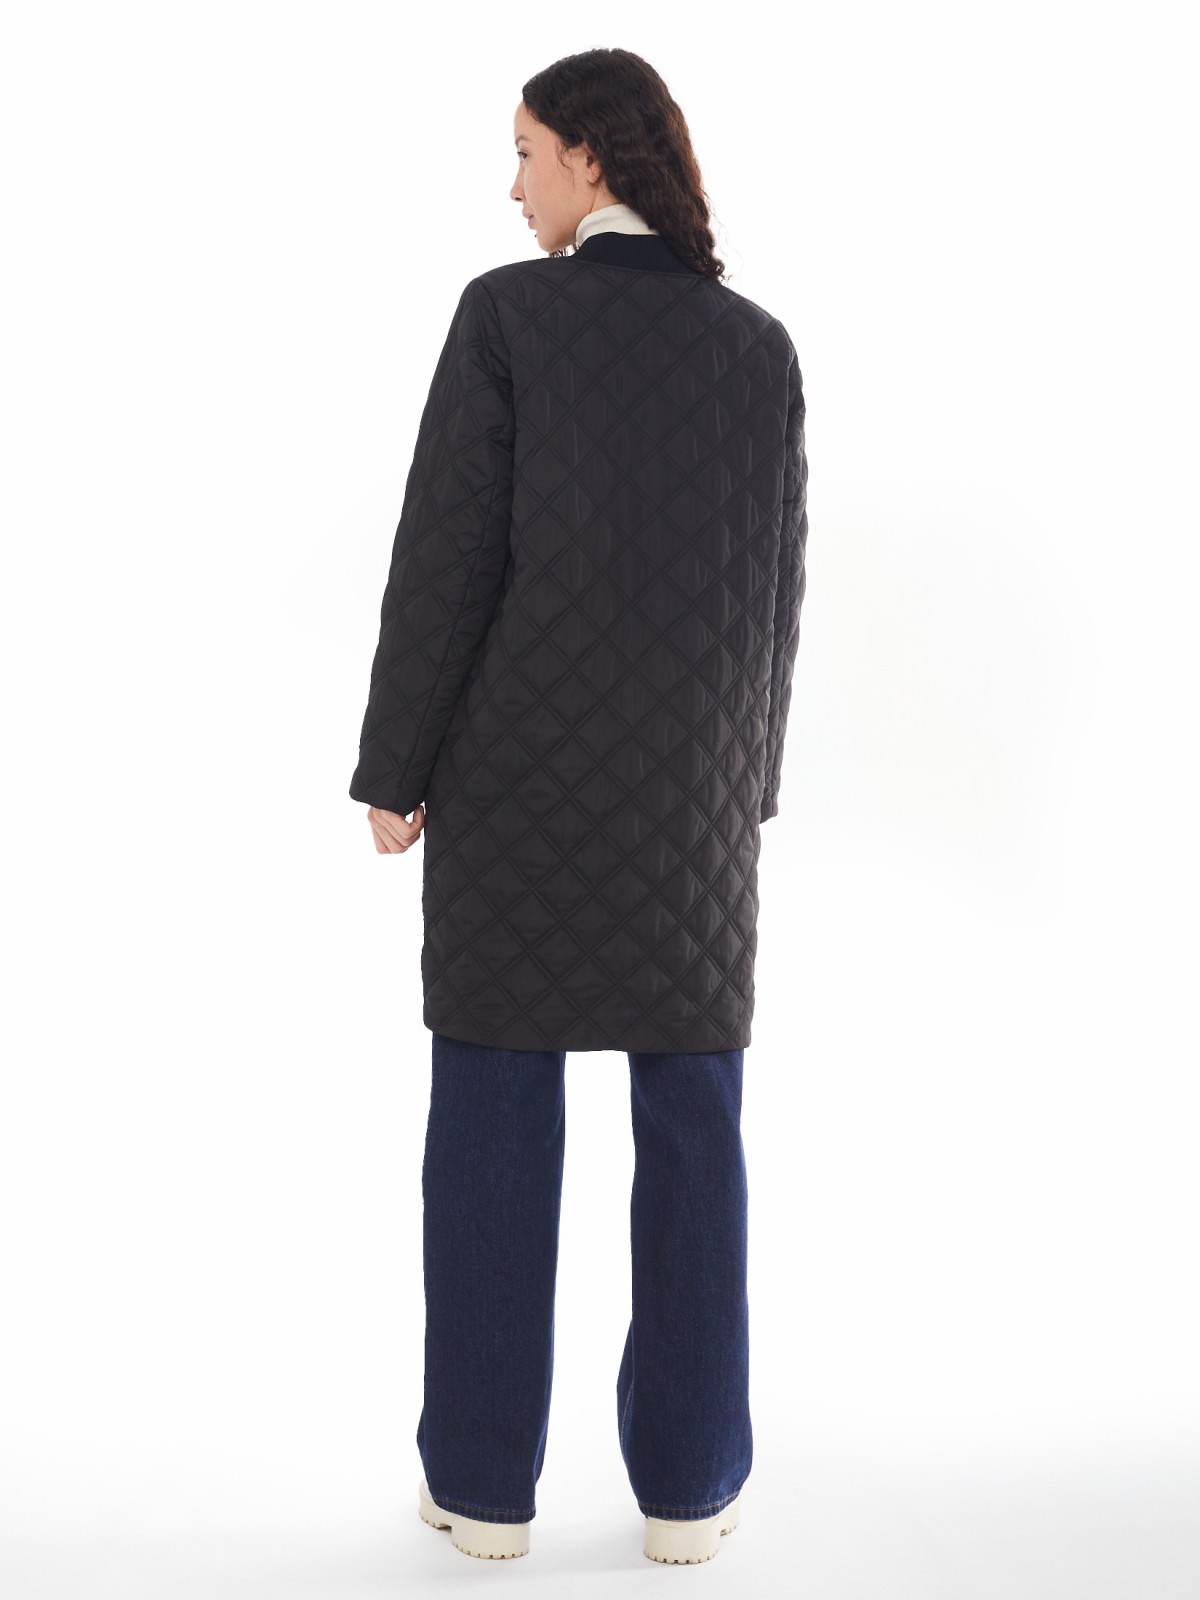 Утеплённое стёганое пальто-бомбер на синтепоне zolla 024125250044, цвет черный, размер XS - фото 6